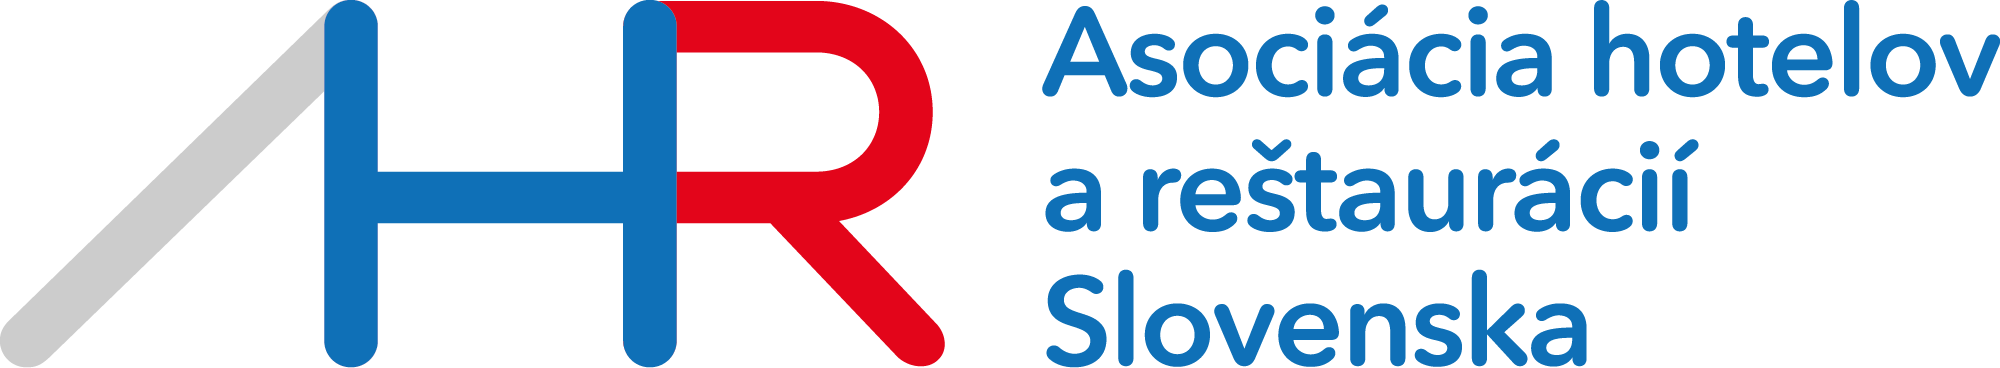 AHR SK logo